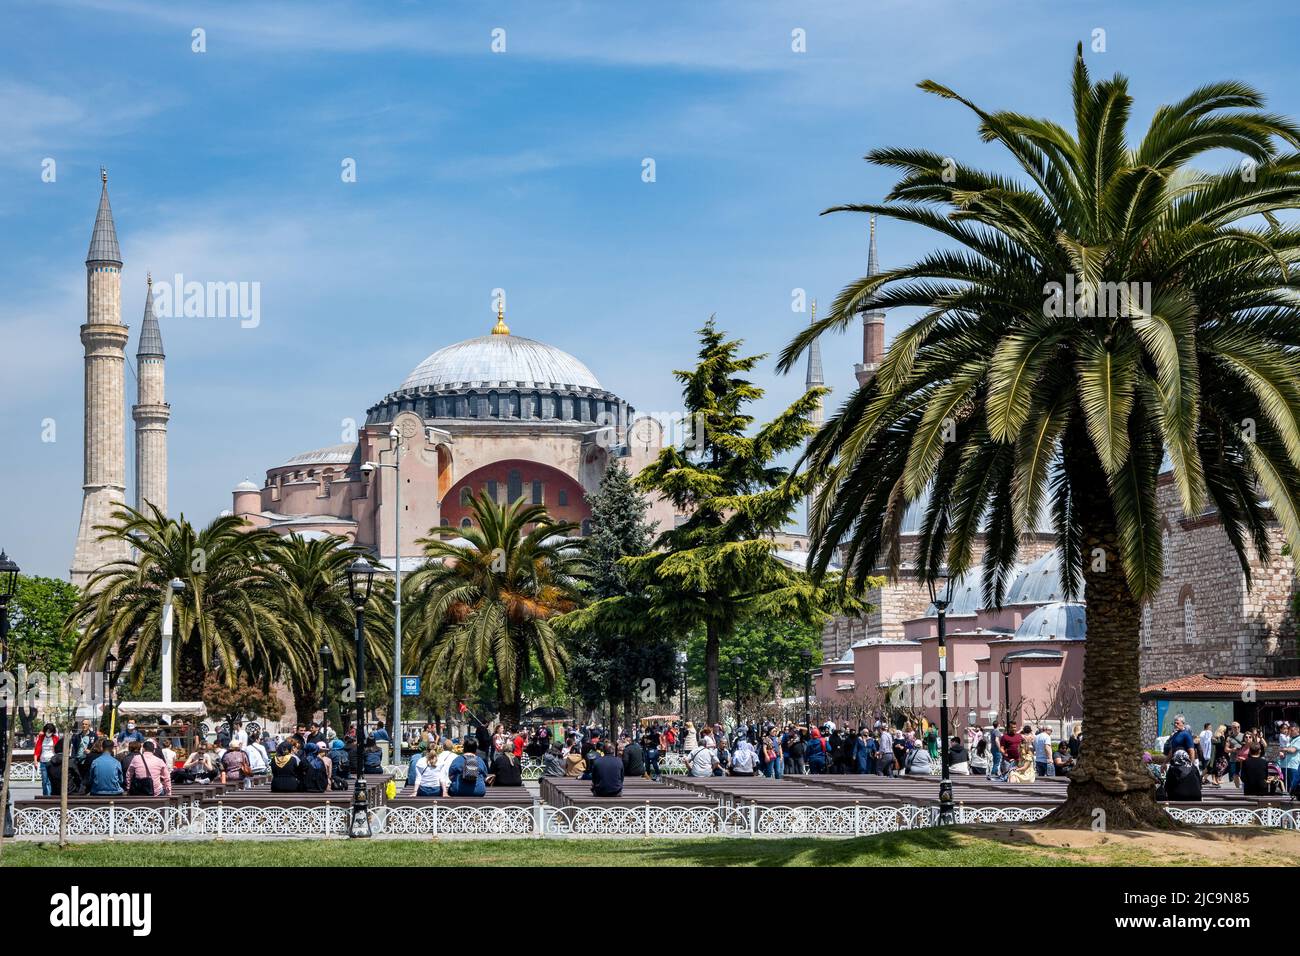 Touristen besuchen berühmte Attraktionen wie die Hagia Sophia am Sultanahmet-Platz, Istanbul, Türkiye. Stockfoto